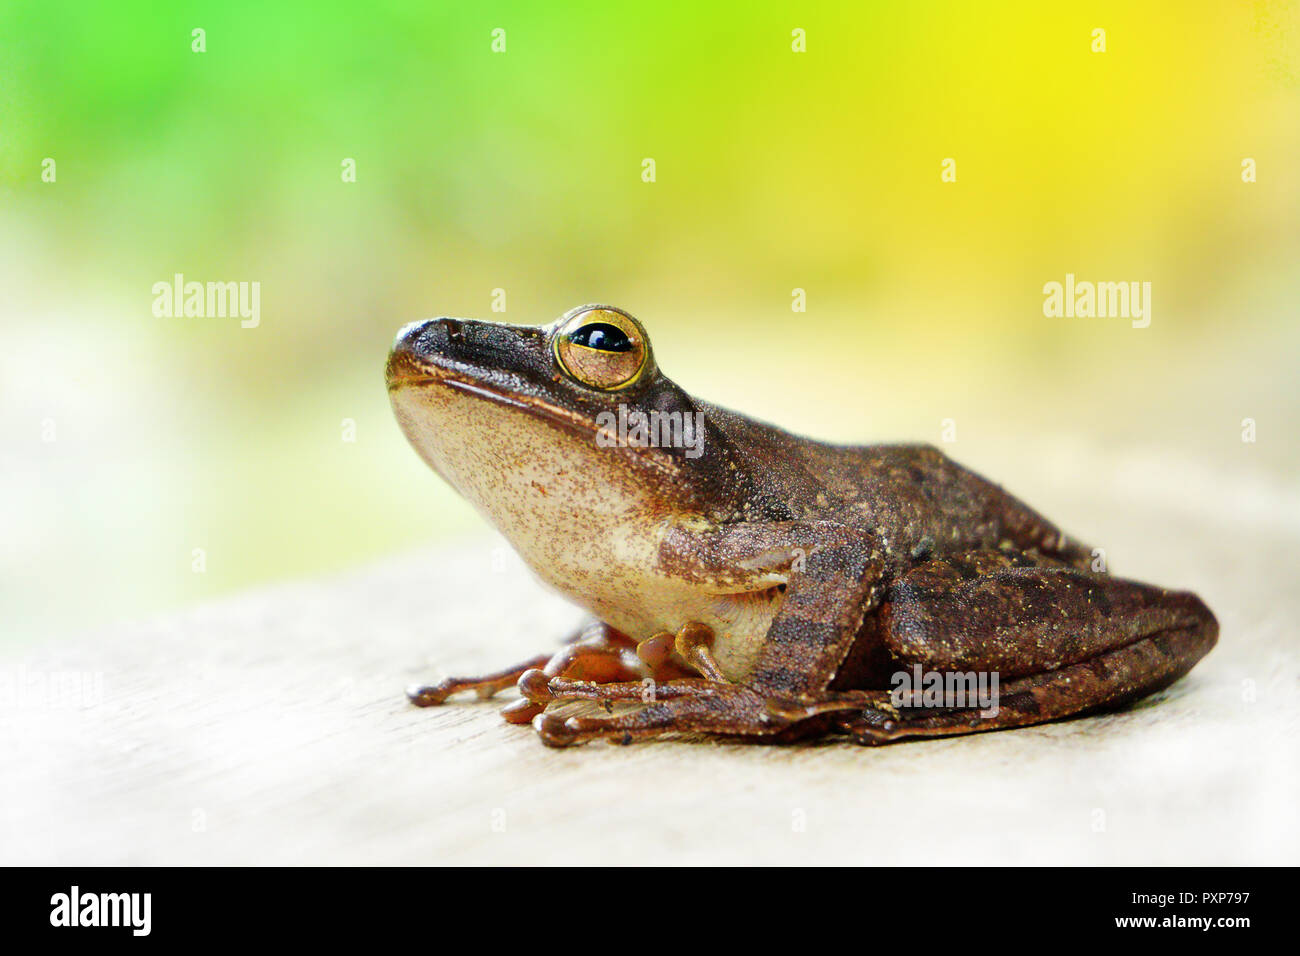 Ein laubfrosch ist jede Art von Frosch, der ein großer Teil der Lebensdauer  in Bäumen, als eine bekannte verbringt. Mehrere Linien der Frösche unter t  Stockfotografie - Alamy